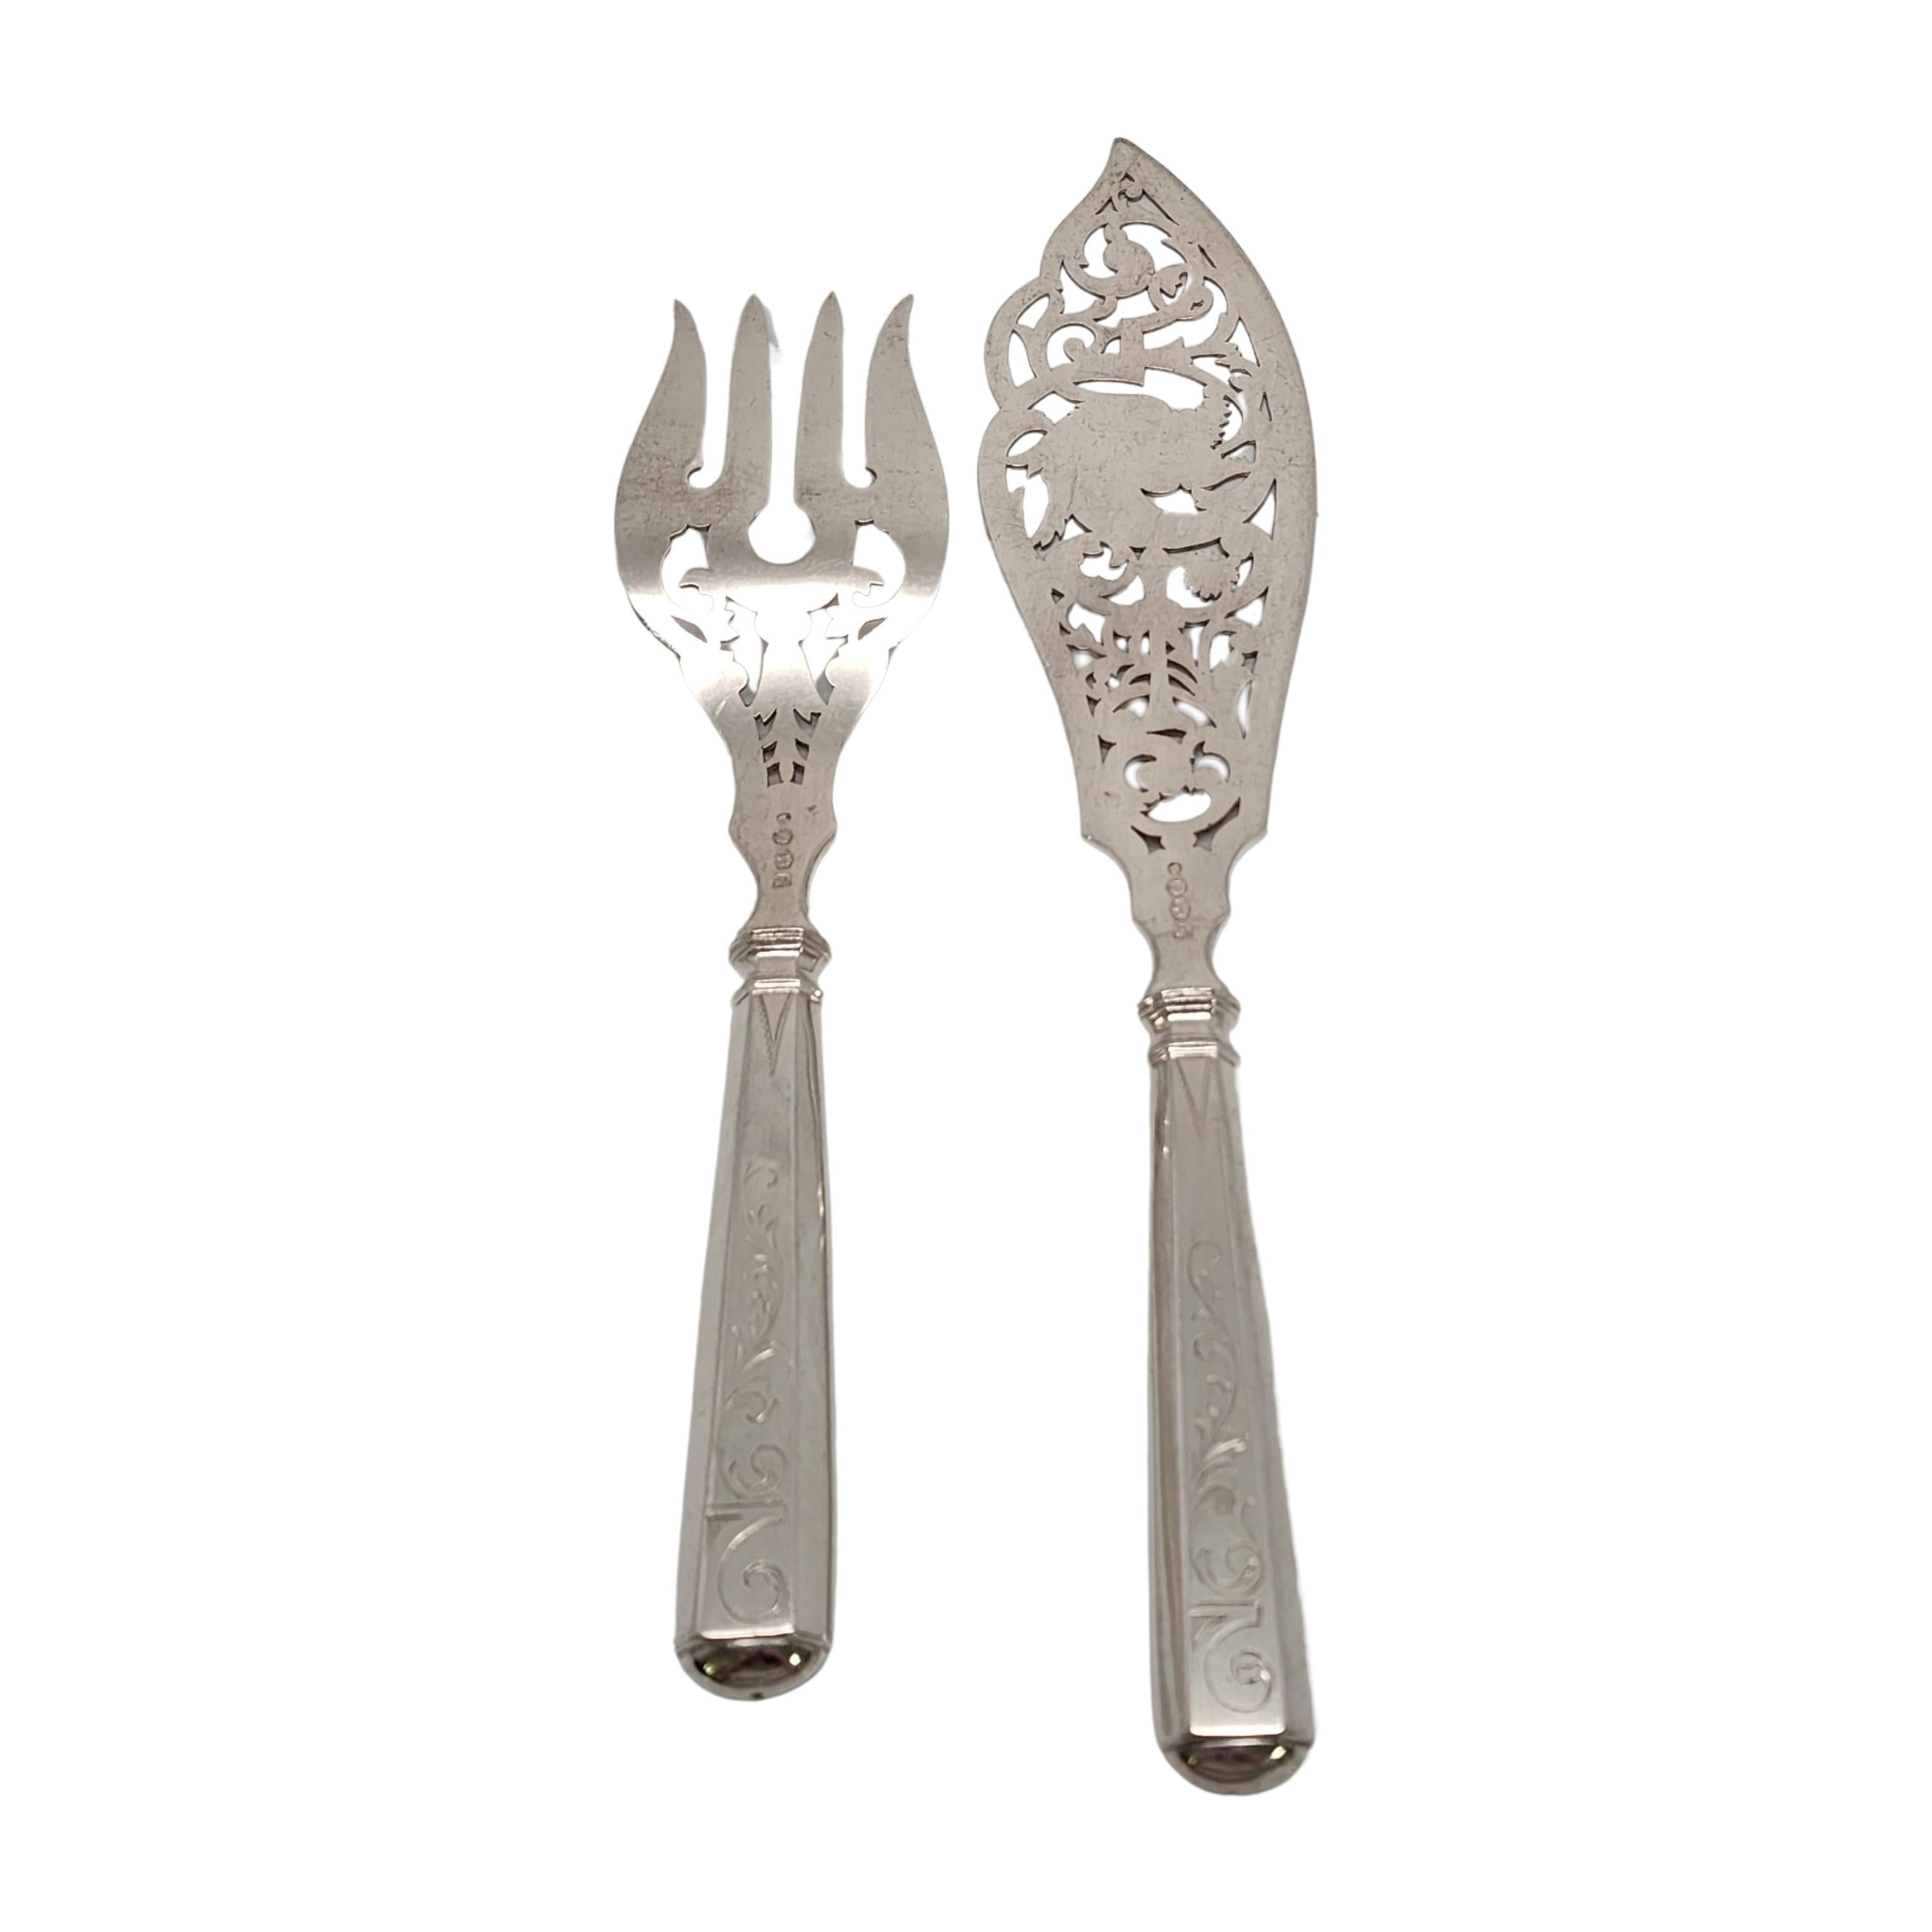 Set de fourchettes et de couteaux de service en argent CIRCA ancien, par KA van Kempen, circa 1887.

Pas de monogramme

L'ensemble conçu par JM van Kempen est magnifiquement orné de dents et de lames percées et gravées. Les poignées sont ornées de